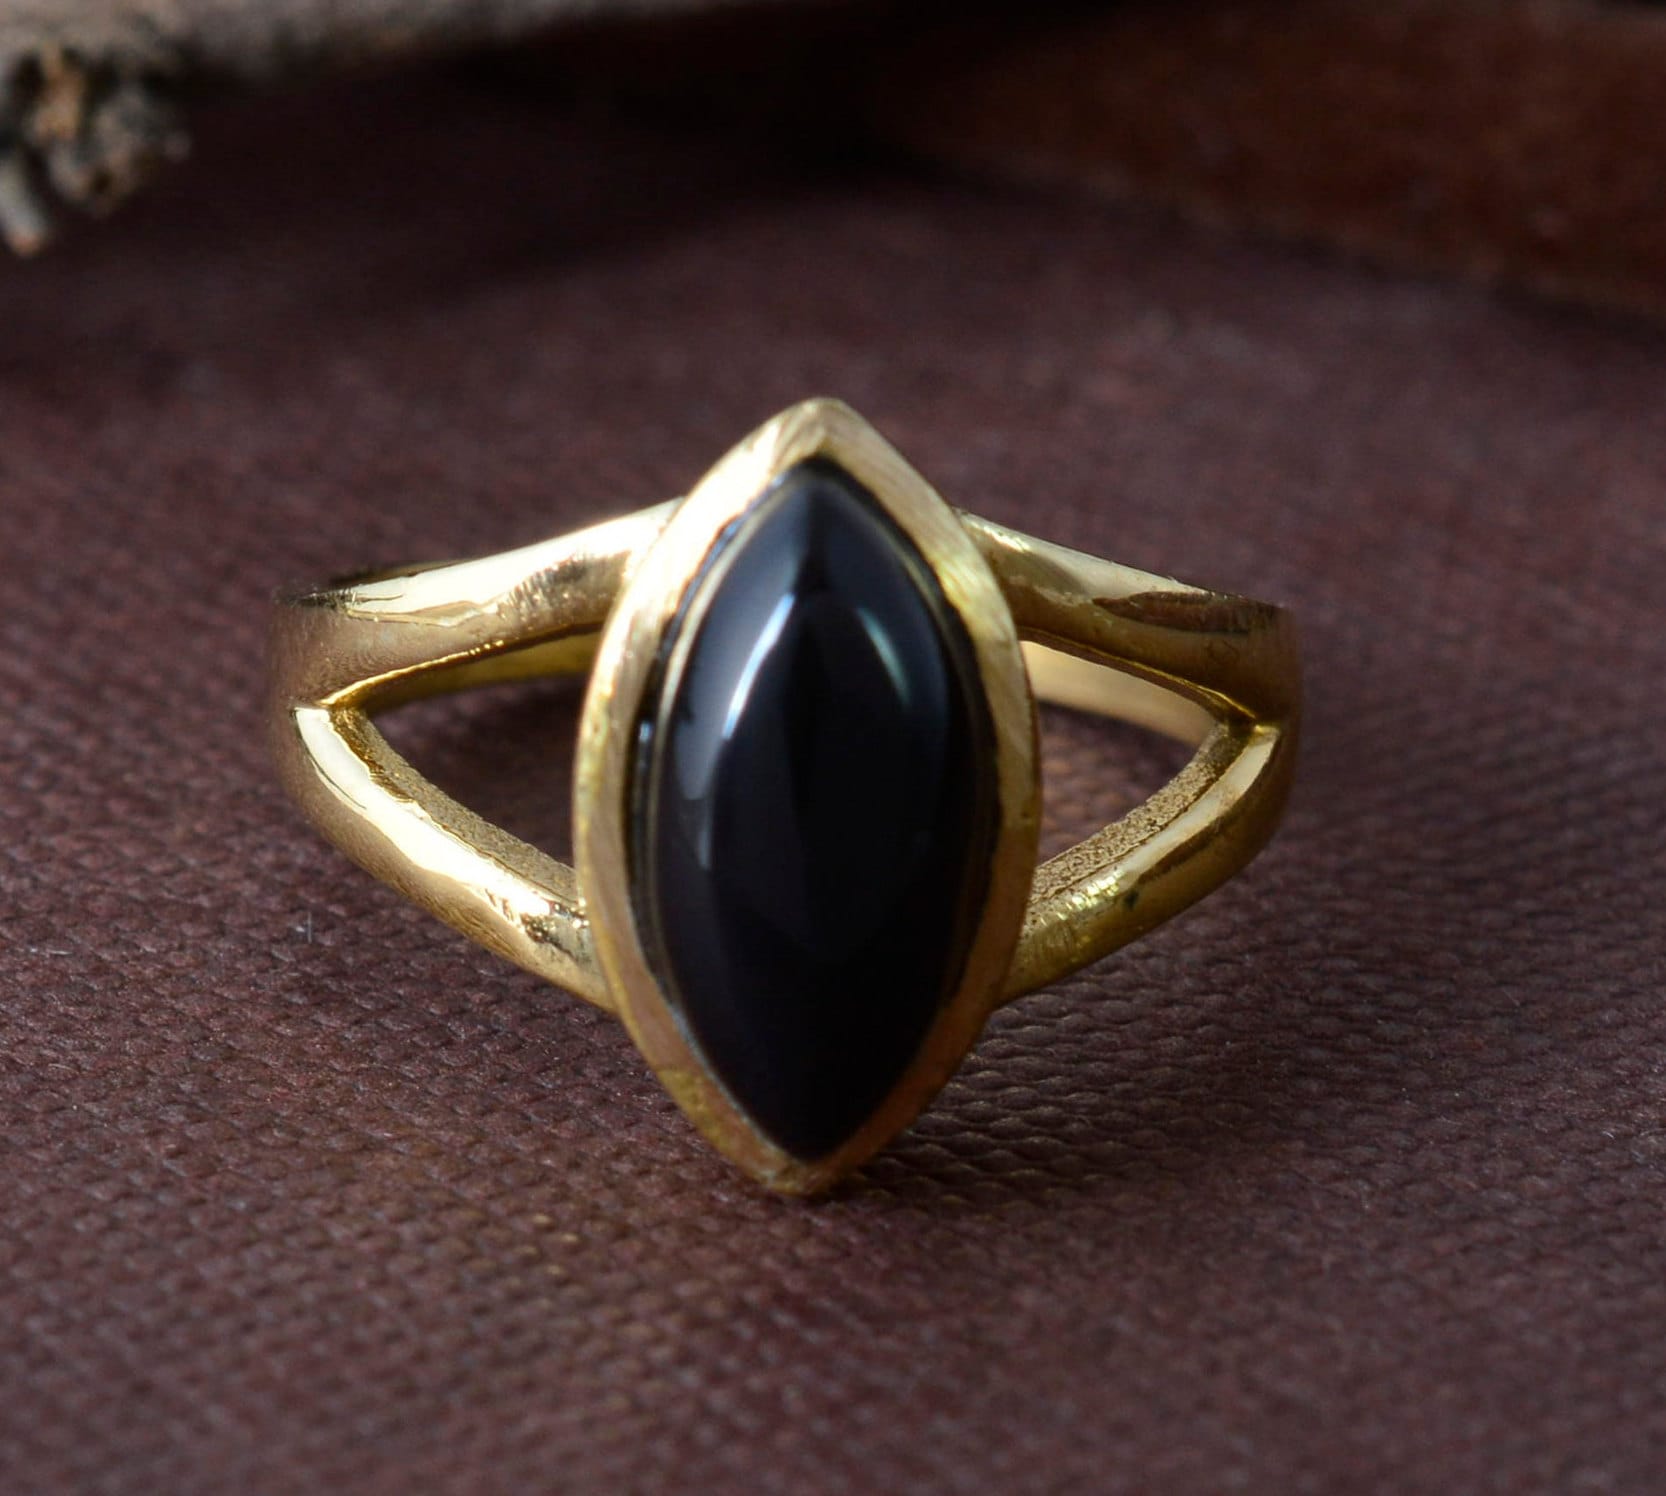 Schwarzer Obsidian Ring, Frauen Geschenk Edelstein Handgemachter Schutzring, Für Sie, Midi Ring von TasuPoint